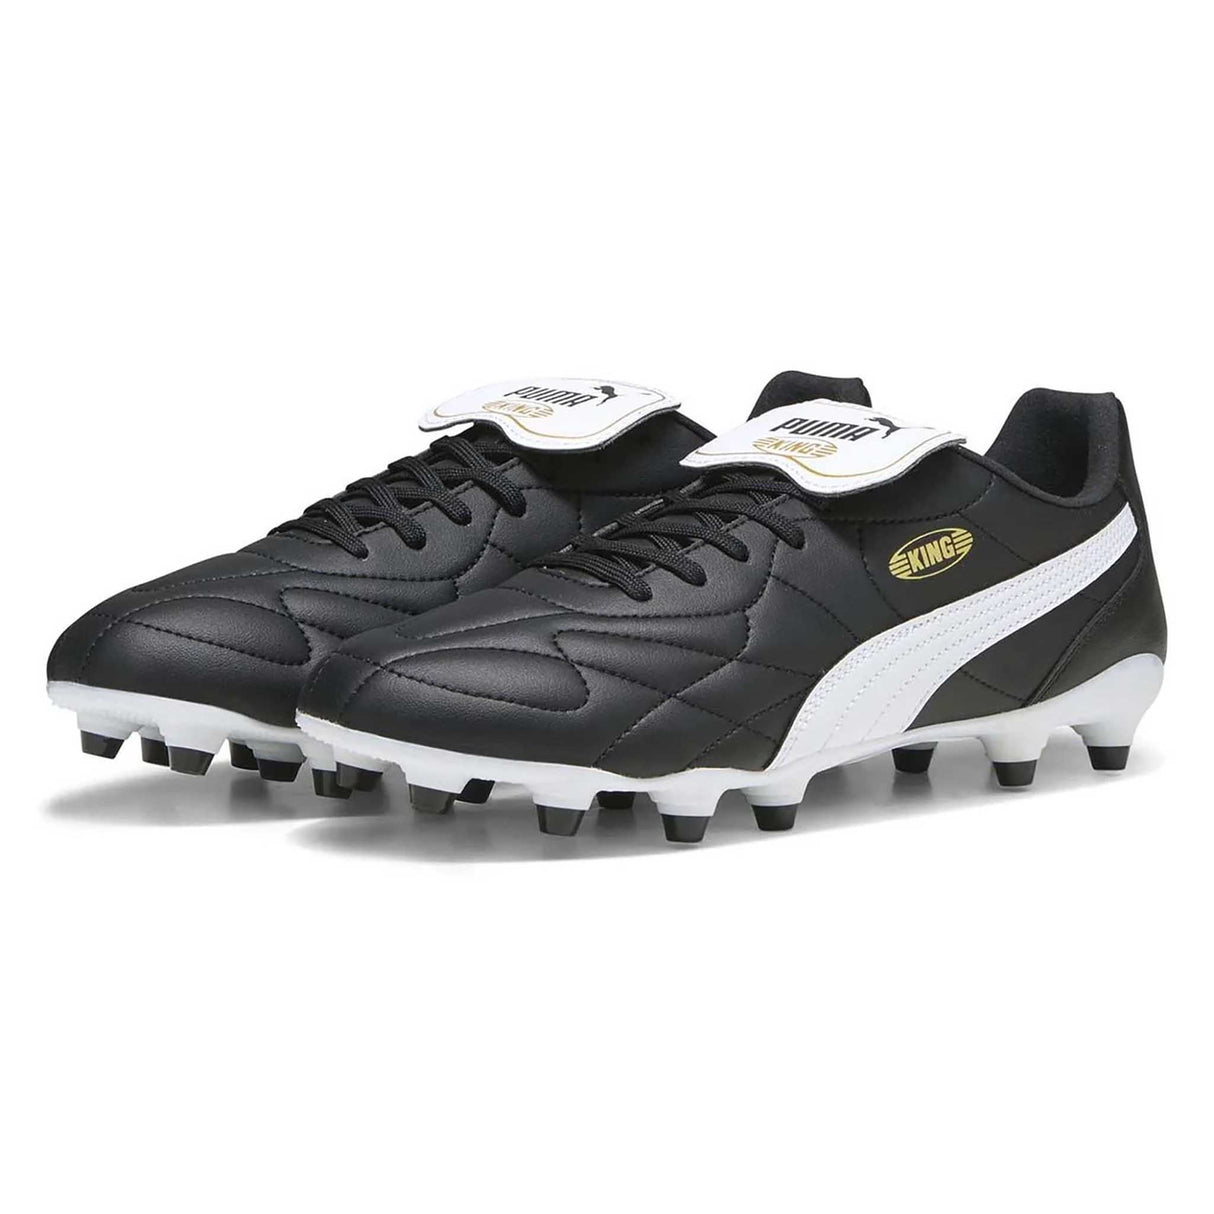 Puma King Top FG/AG souliers de soccer à crampons pour adultes paire- noir / blanc